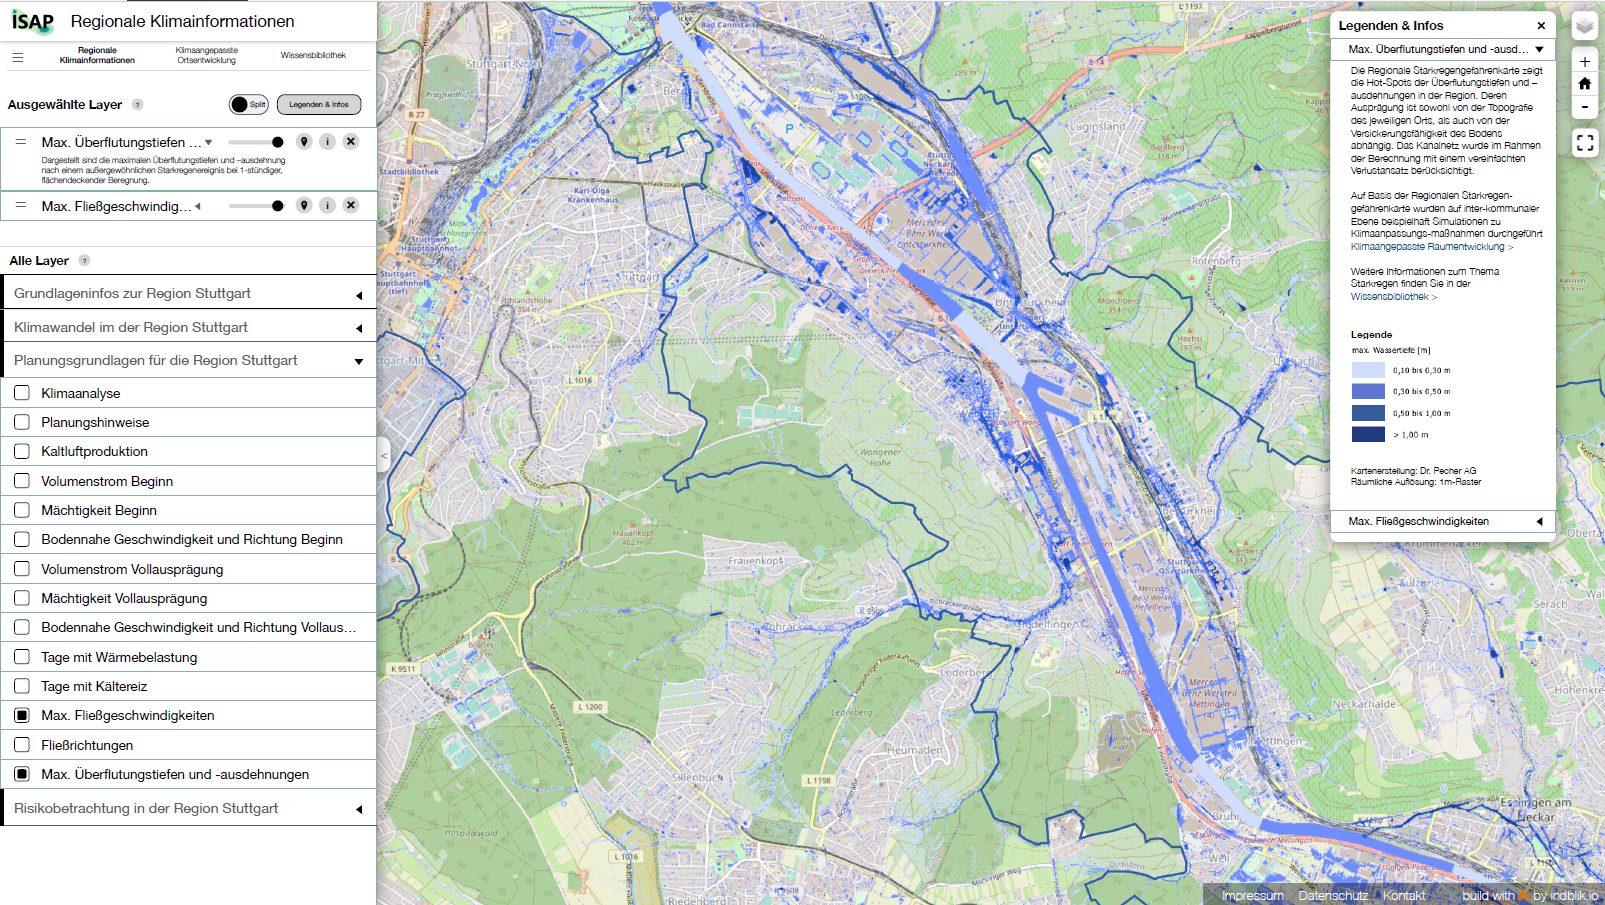 Abbildung 4: Darstellung der regionalen Klimainformationen - Auswahl der Parameter „Maximale Fließgeschwindigkeiten“ sowie „Maximale Überflutungstiefen und -ausdehnungen“ - Säule 1 des ISAP-Online-Tools,